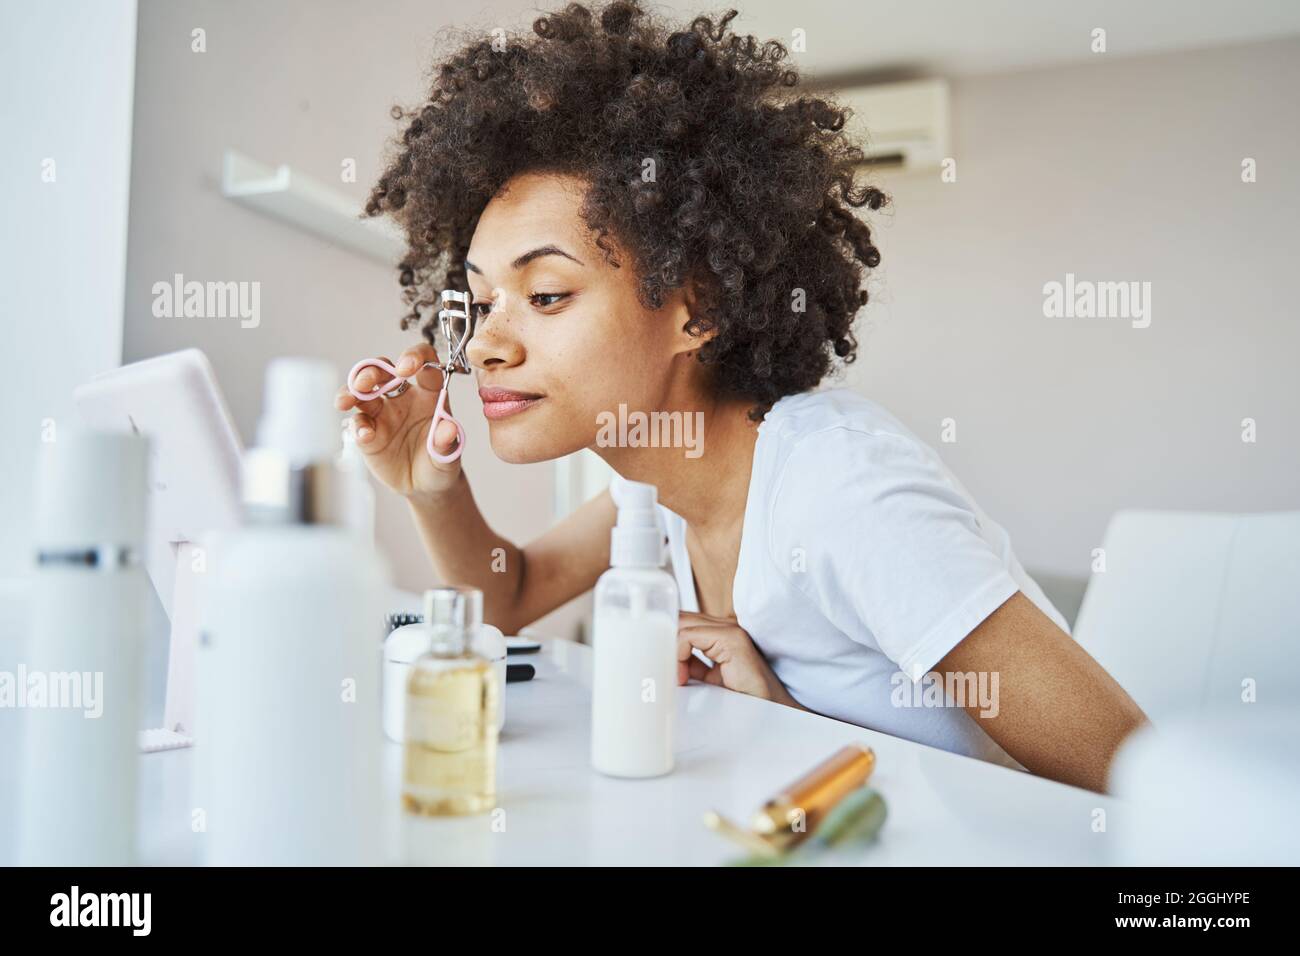 Fokussierte junge Frau mit einem Wimpern-Lockenstab zu Hause Stockfoto